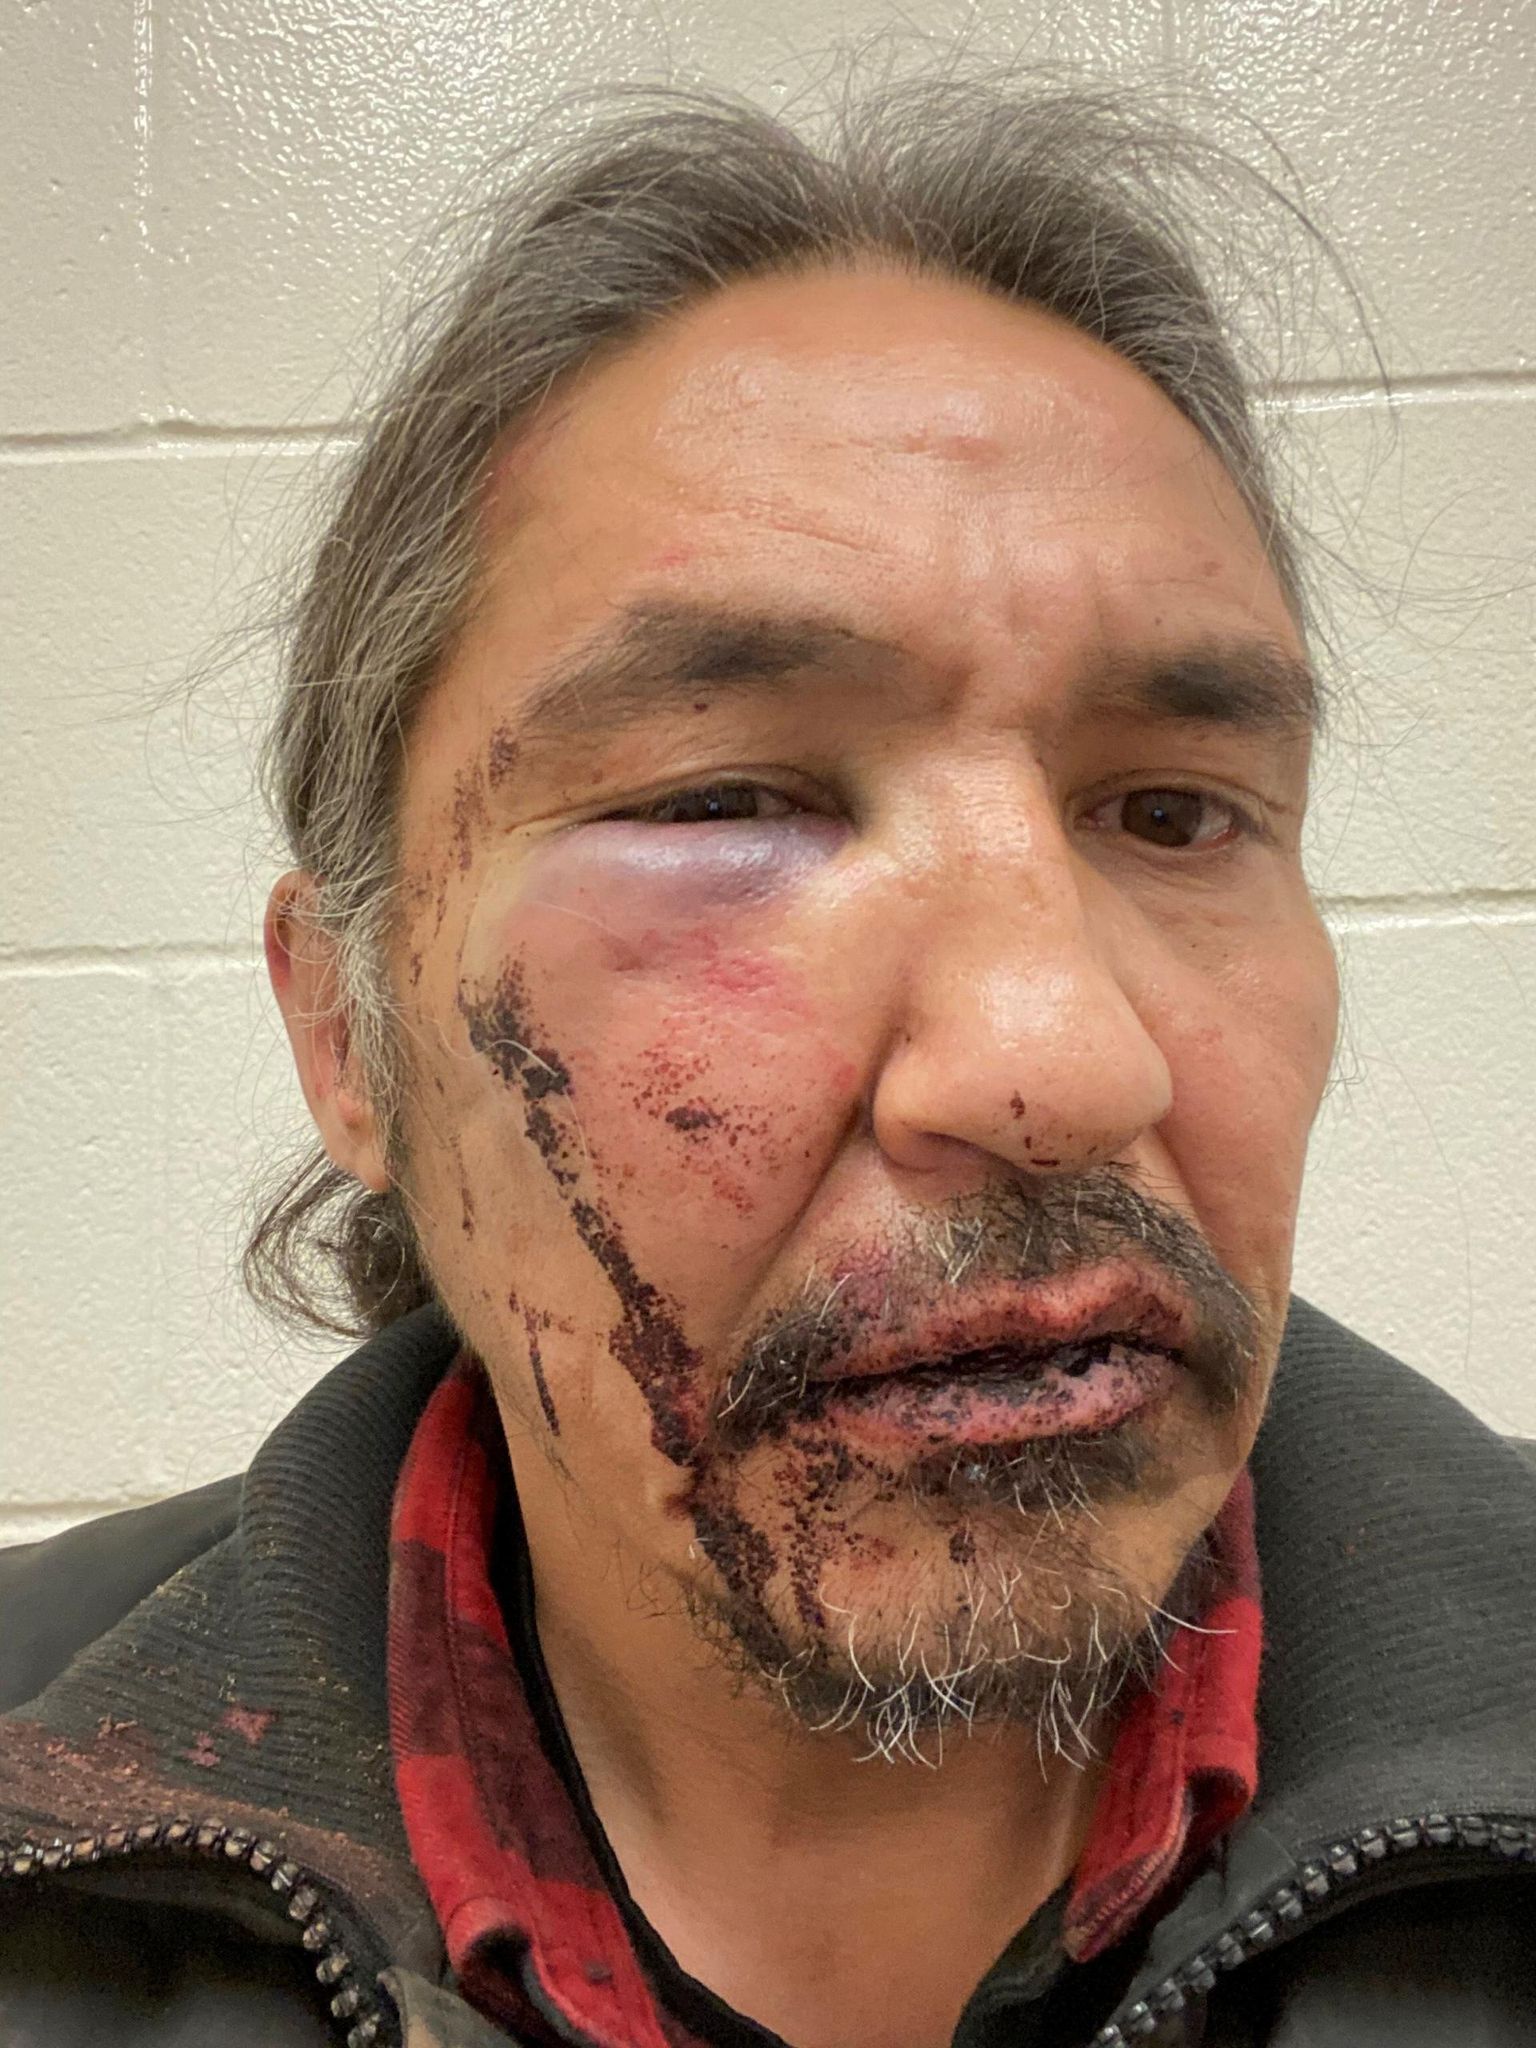 Kanada põliselanike pealik Allan Adam jagas pilti vigastustest, mille väidetvalt põhjustas teda löönud politseinik. 